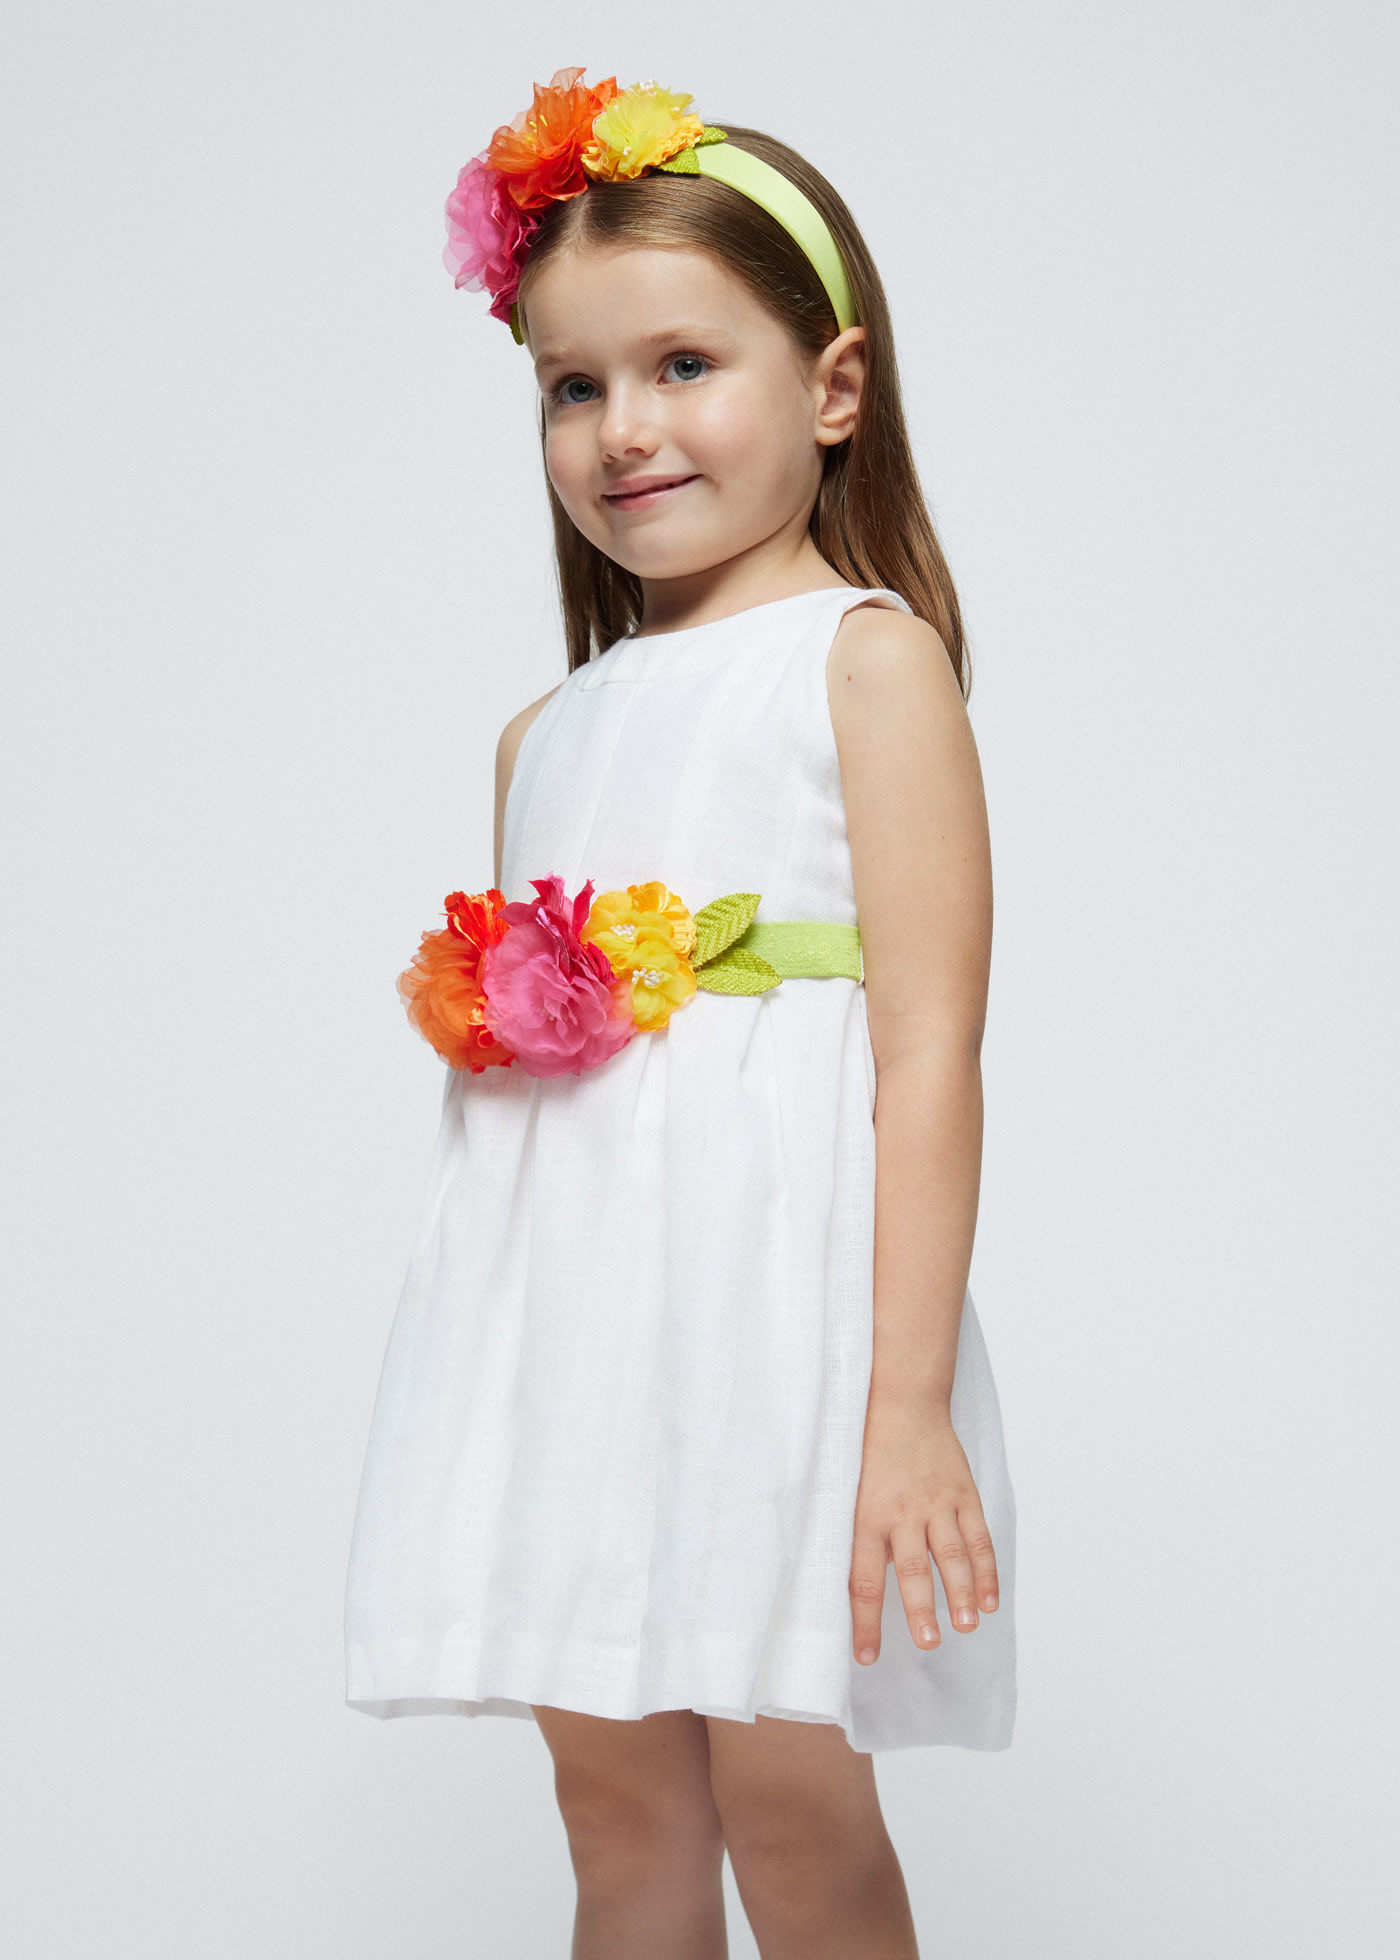 Φόρεμα με ζώνη λουλούδι κορίτσι